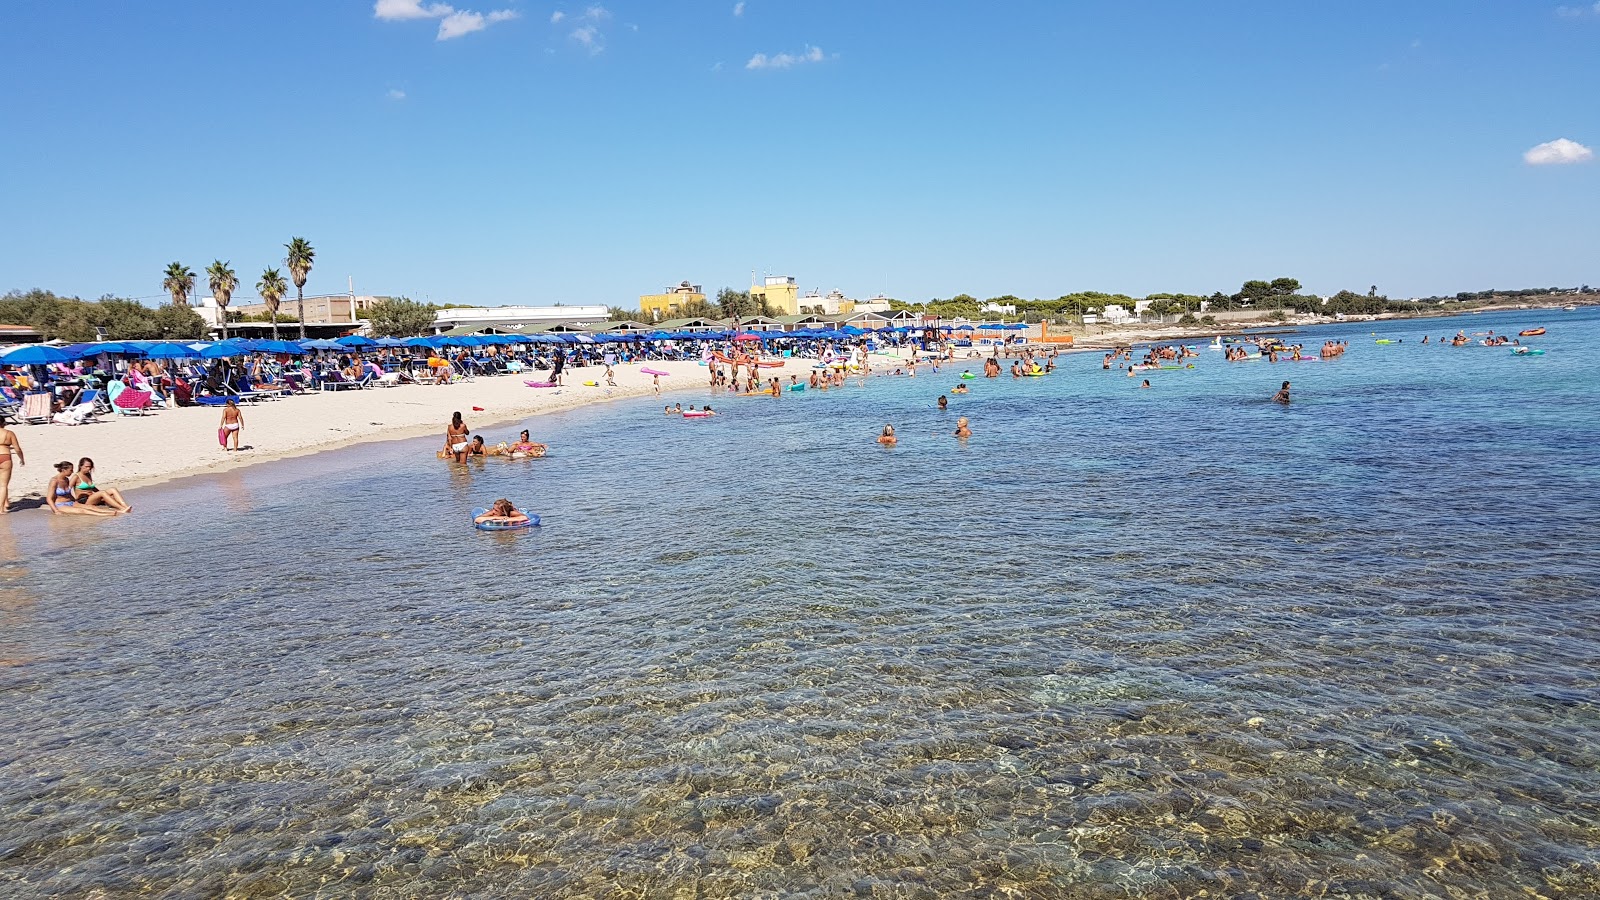 Spiaggia Ufficiali'in fotoğrafı taşlı kum yüzey ile